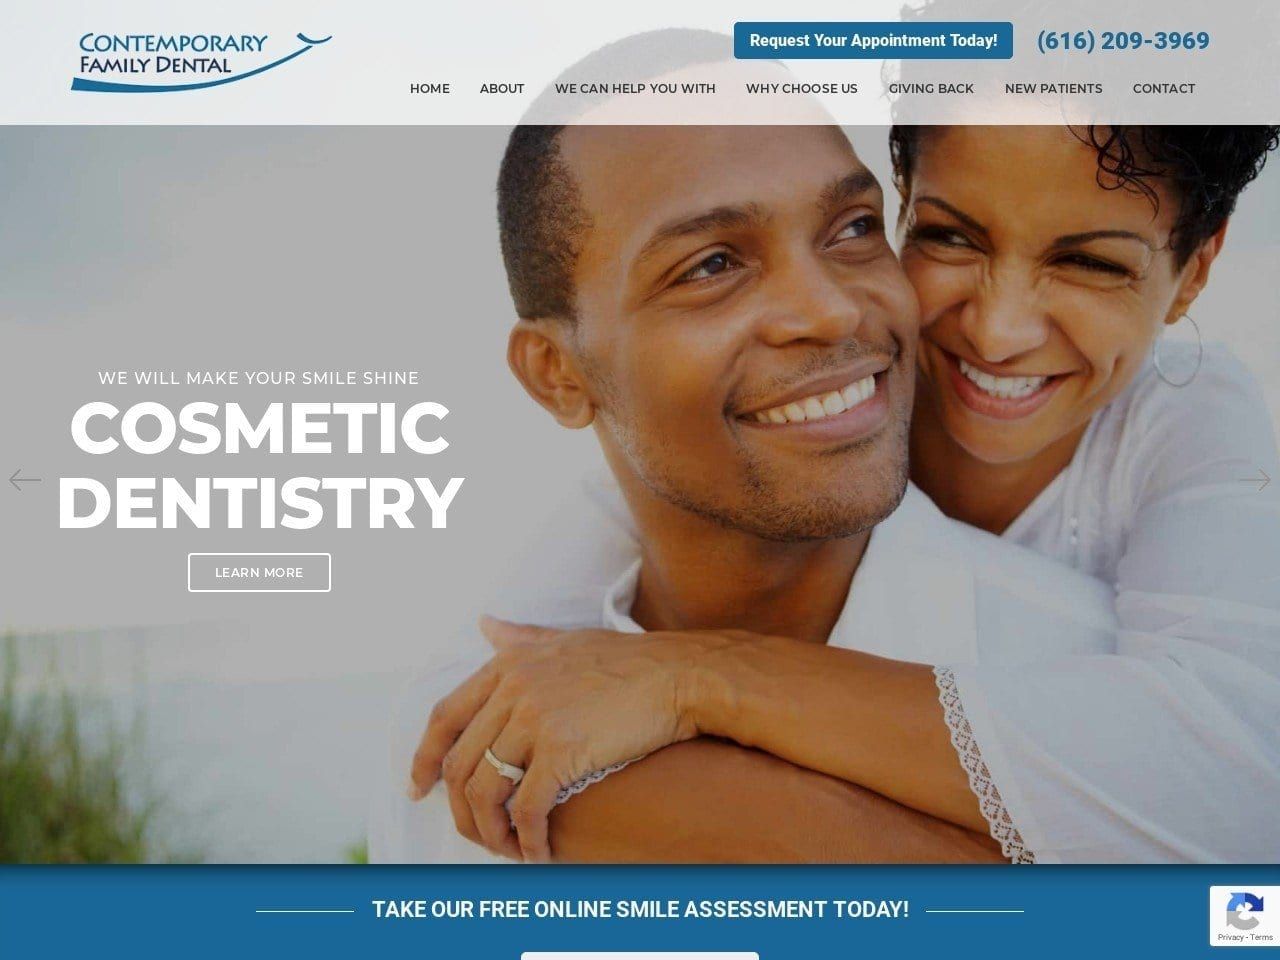 Contemporary Family Dental Website Screenshot from contemporaryfamilydental.com